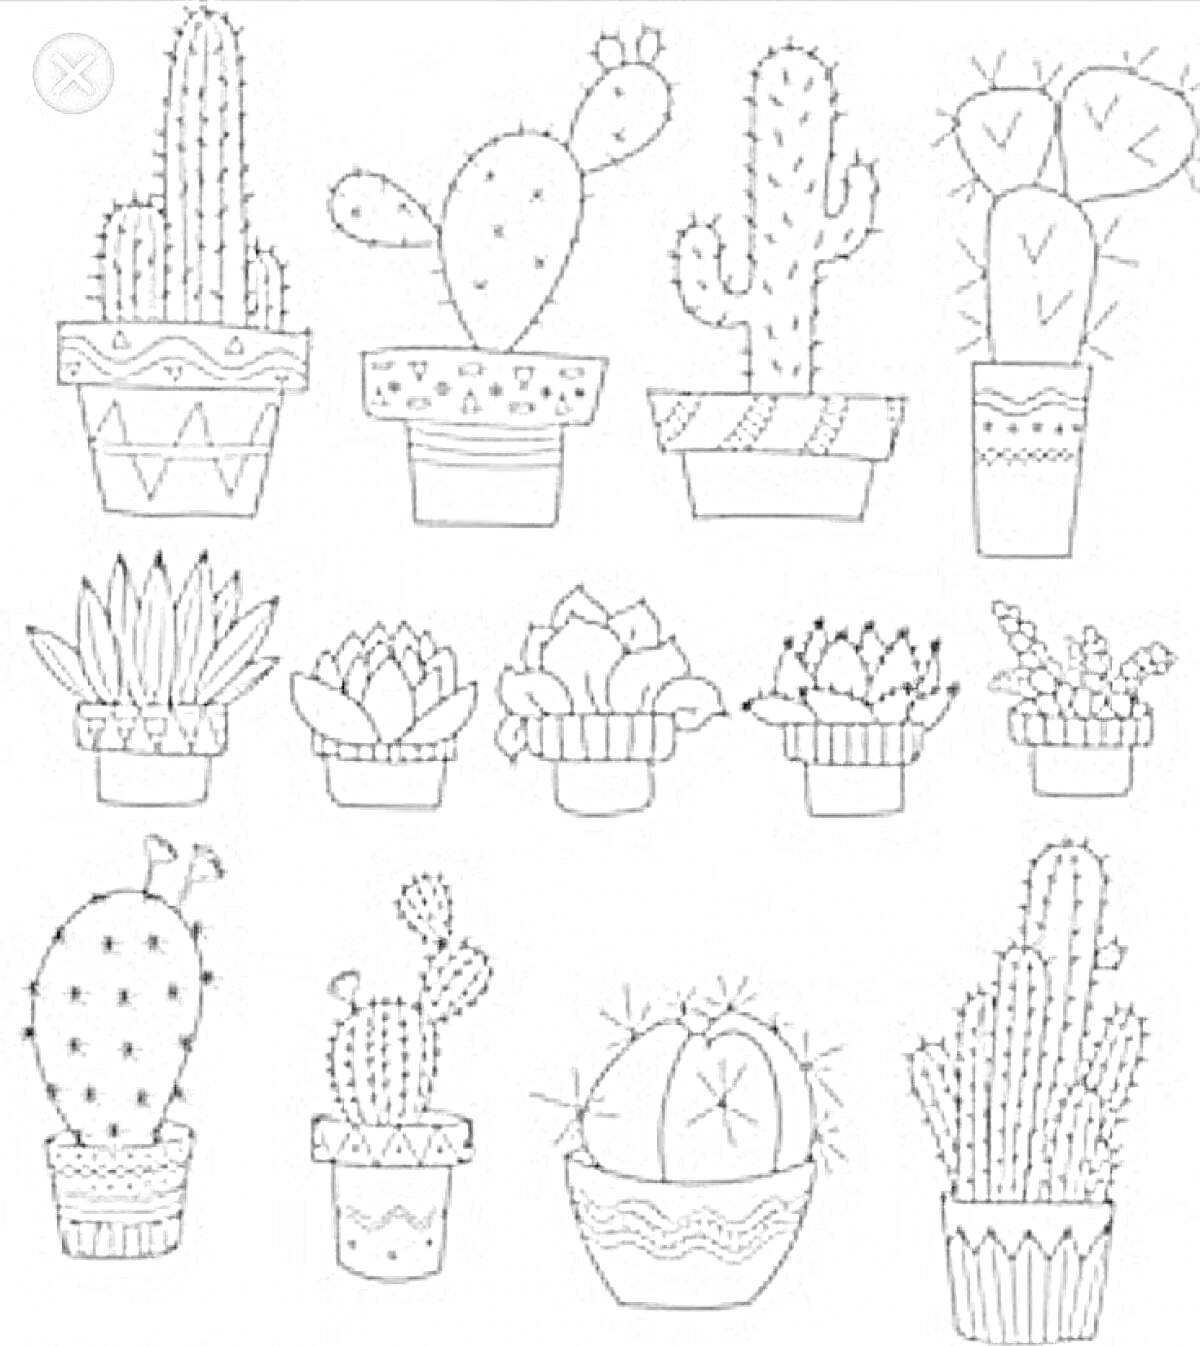 Раскраска Кактусы в горшках (13 различных кактусов в декоративных горшках)